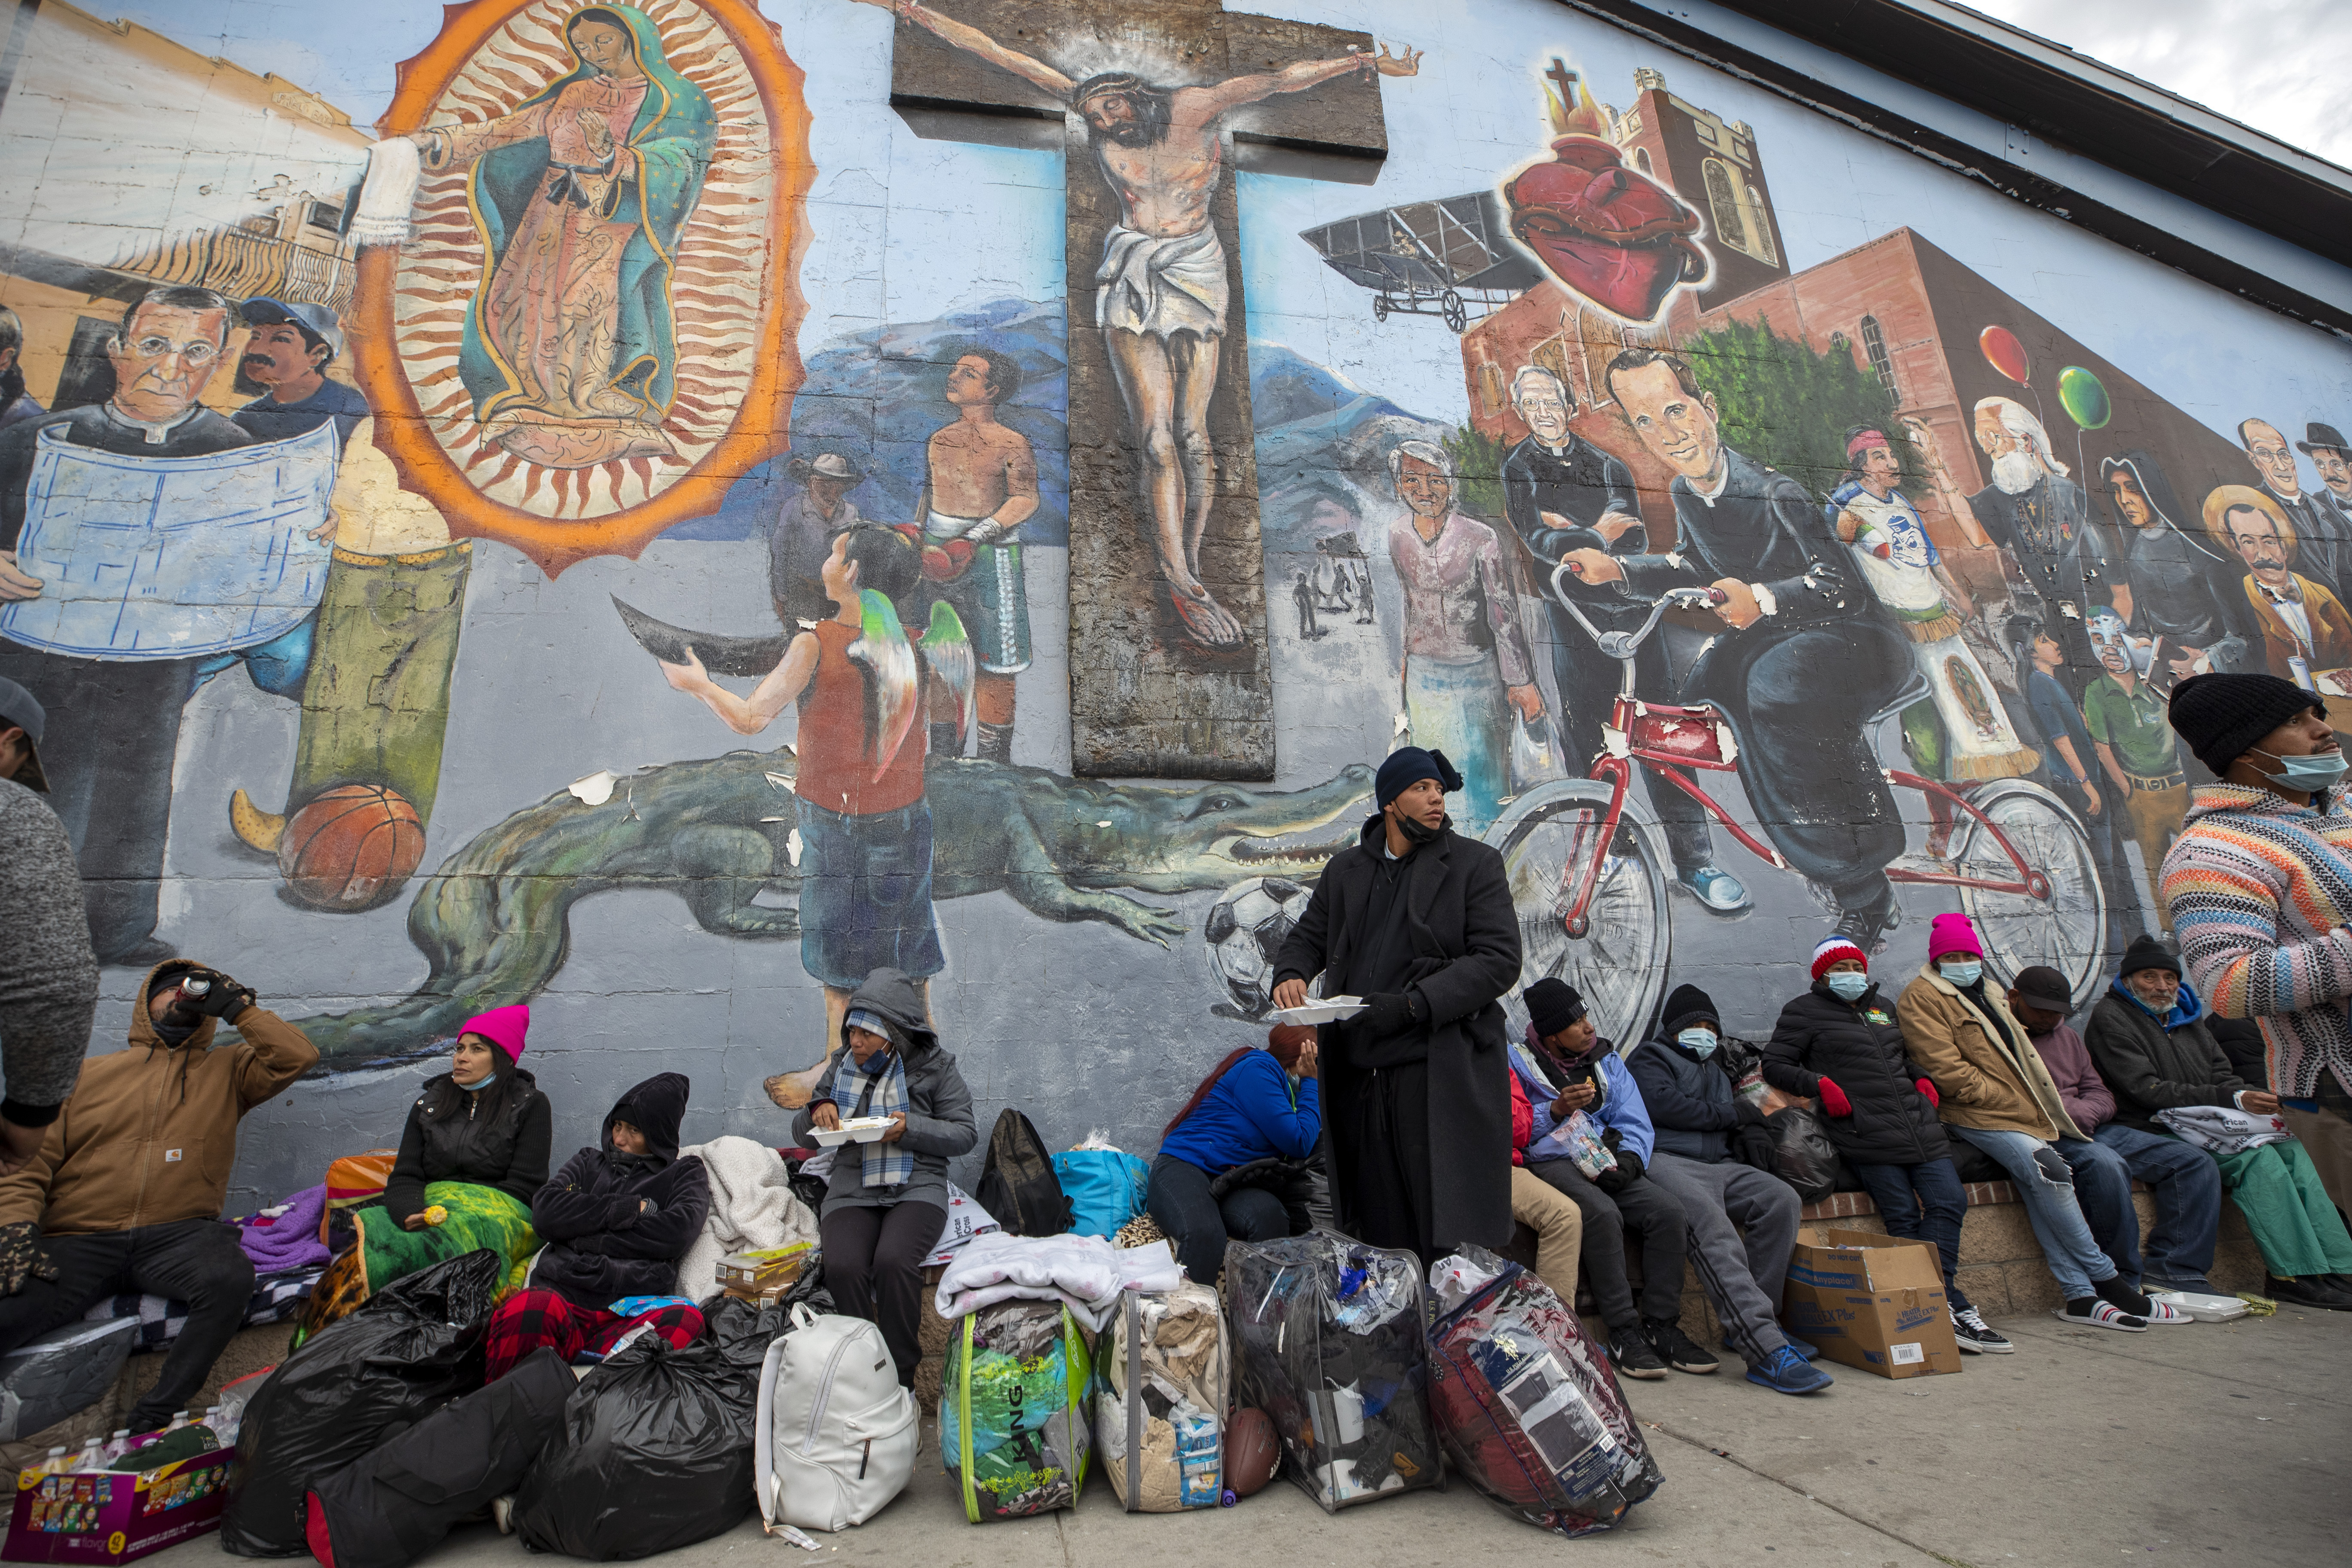 Migrantes comen y esperan ayuda, acampados en una calle del centro de El Paso, Texas (AP Foto/Andres Leighton)